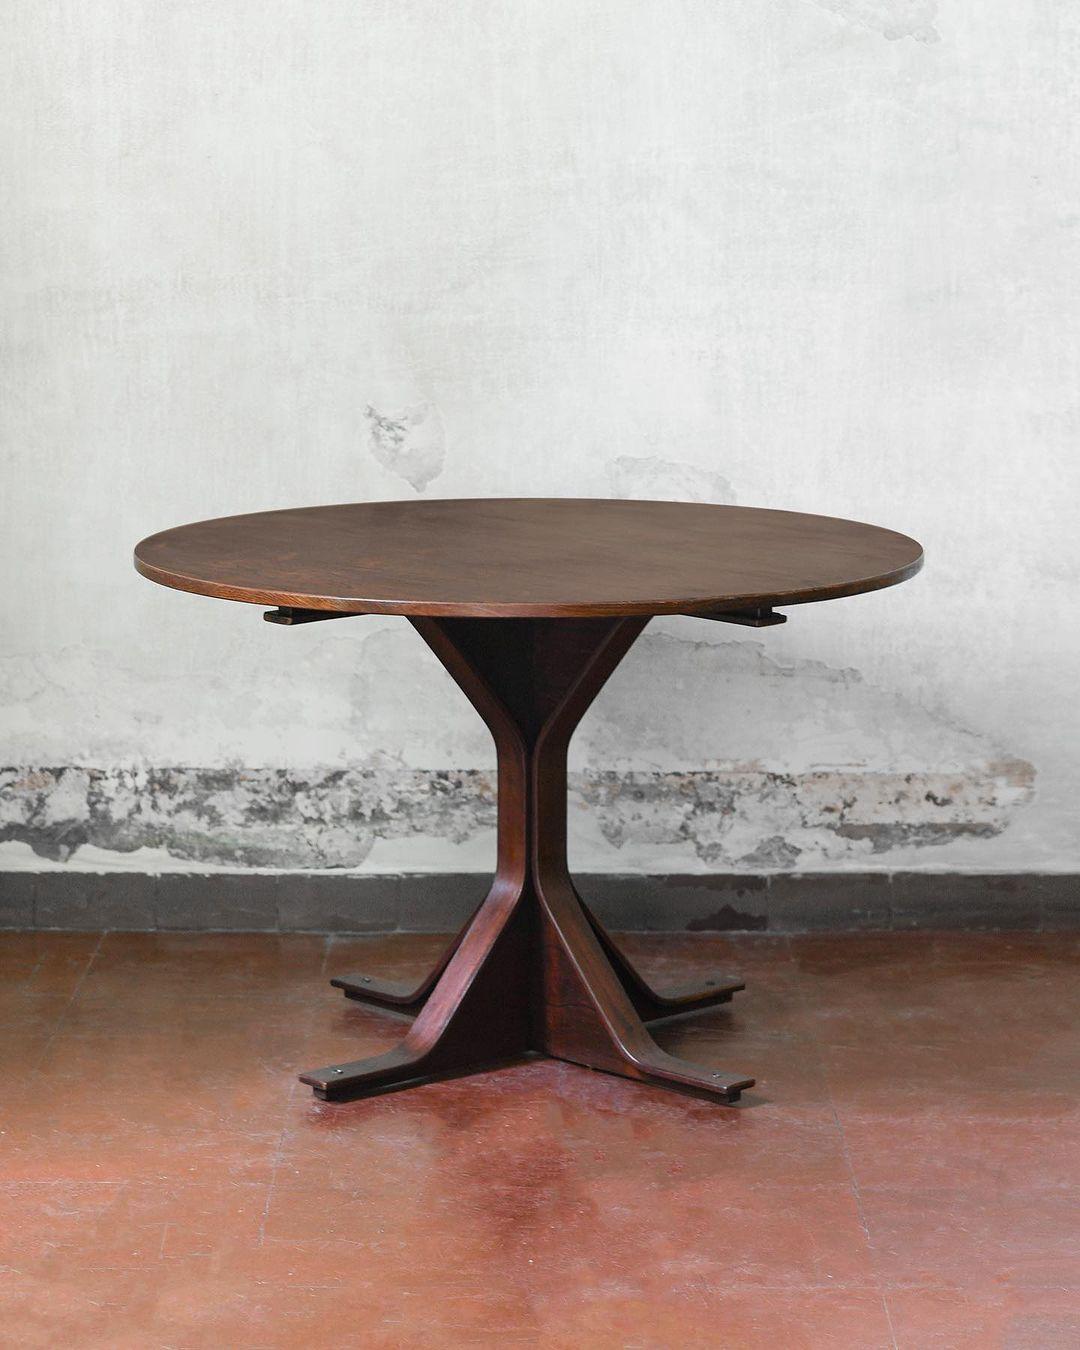 Table modèle 522 de Gianfranco Frattini pour Bernini, Italie 1960
Détails du produit
Dimensions : 74 H x 111 D cm